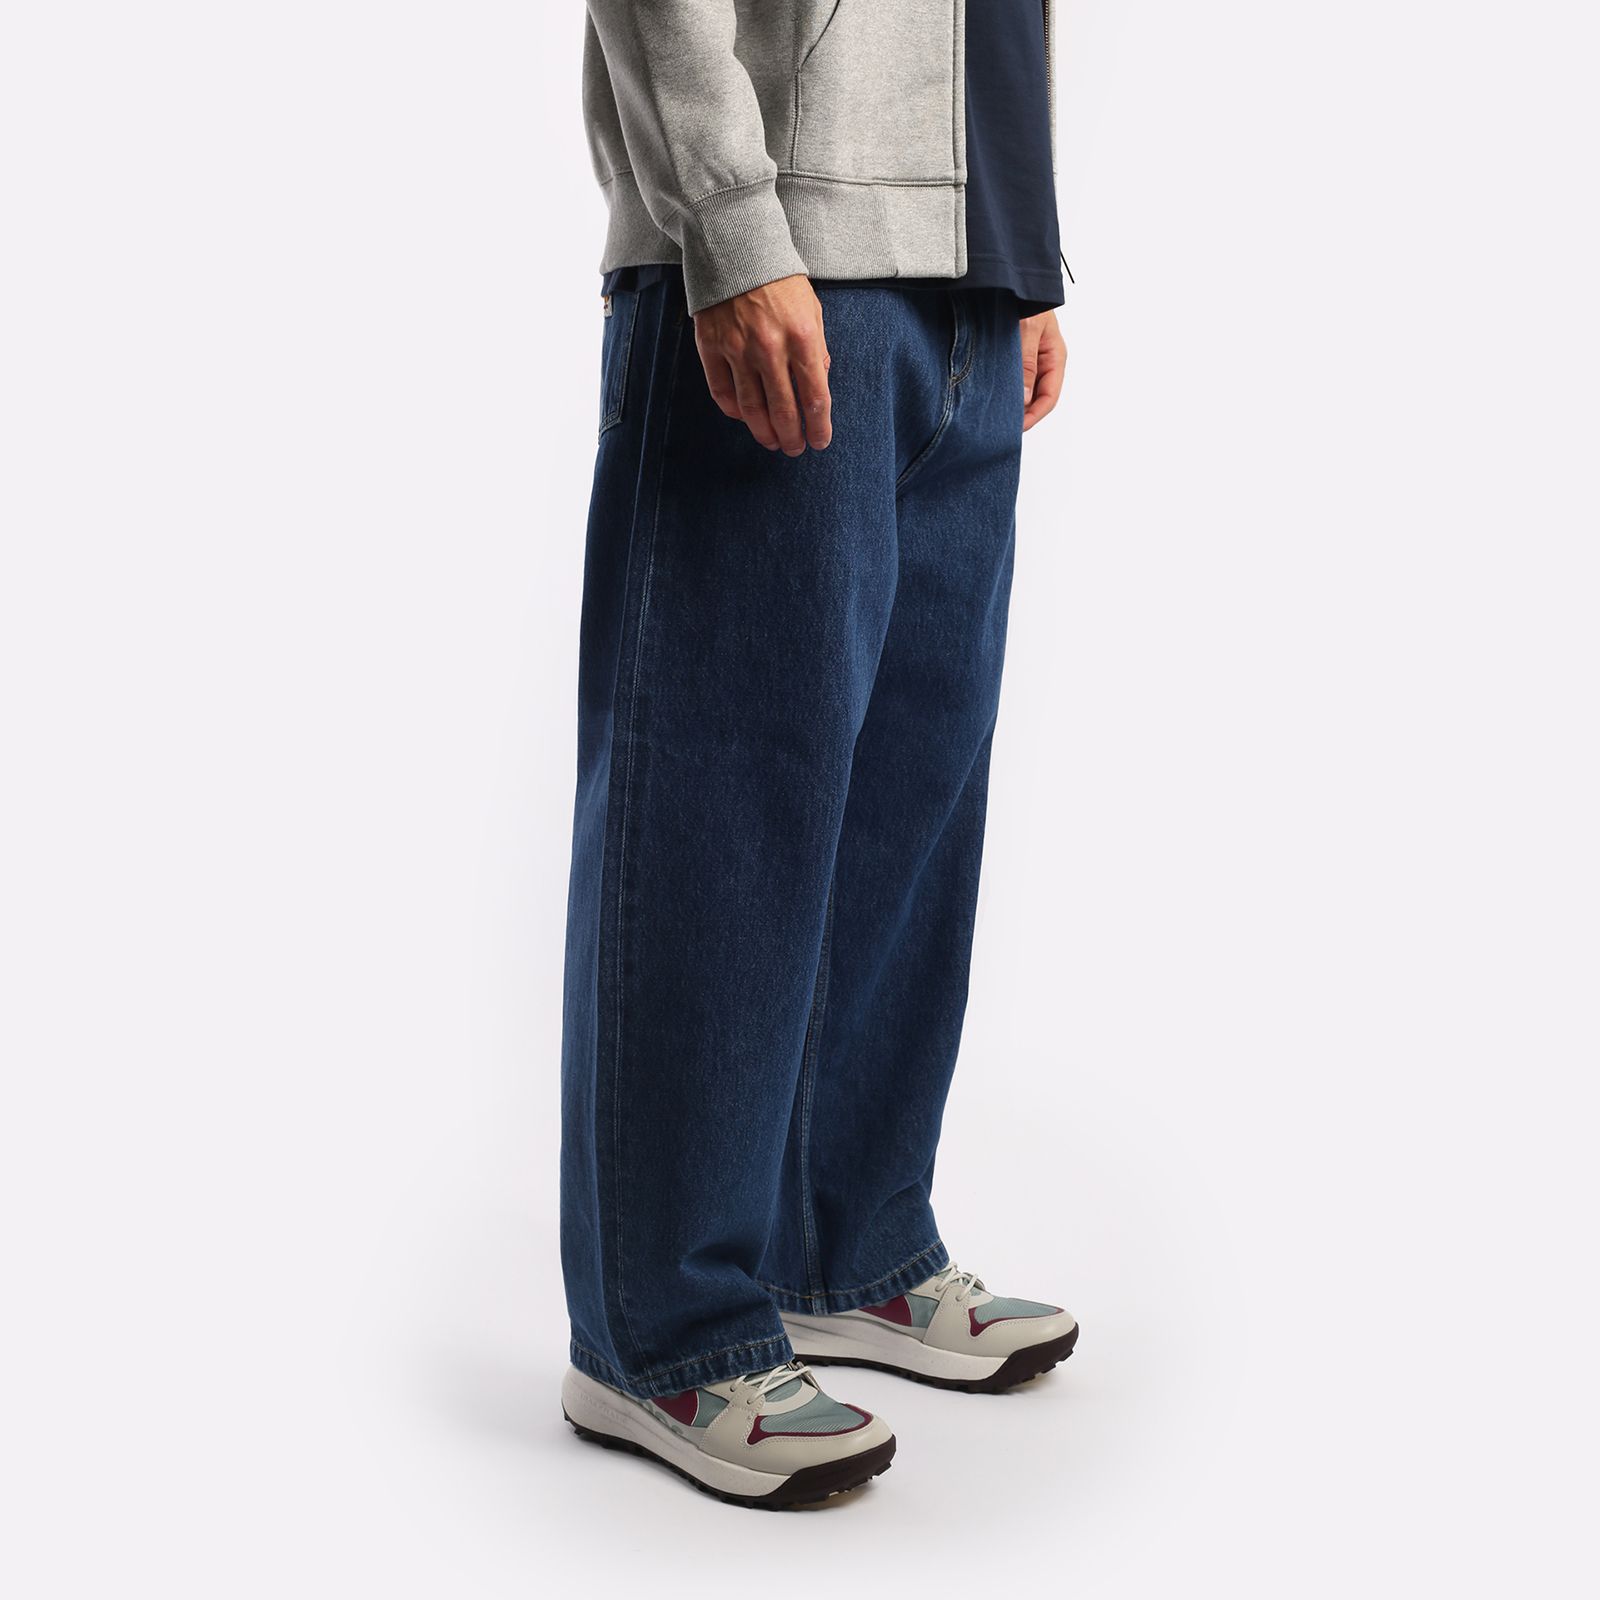 мужские брюки Carhartt WIP Smith  (I031246-blue)  - цена, описание, фото 5